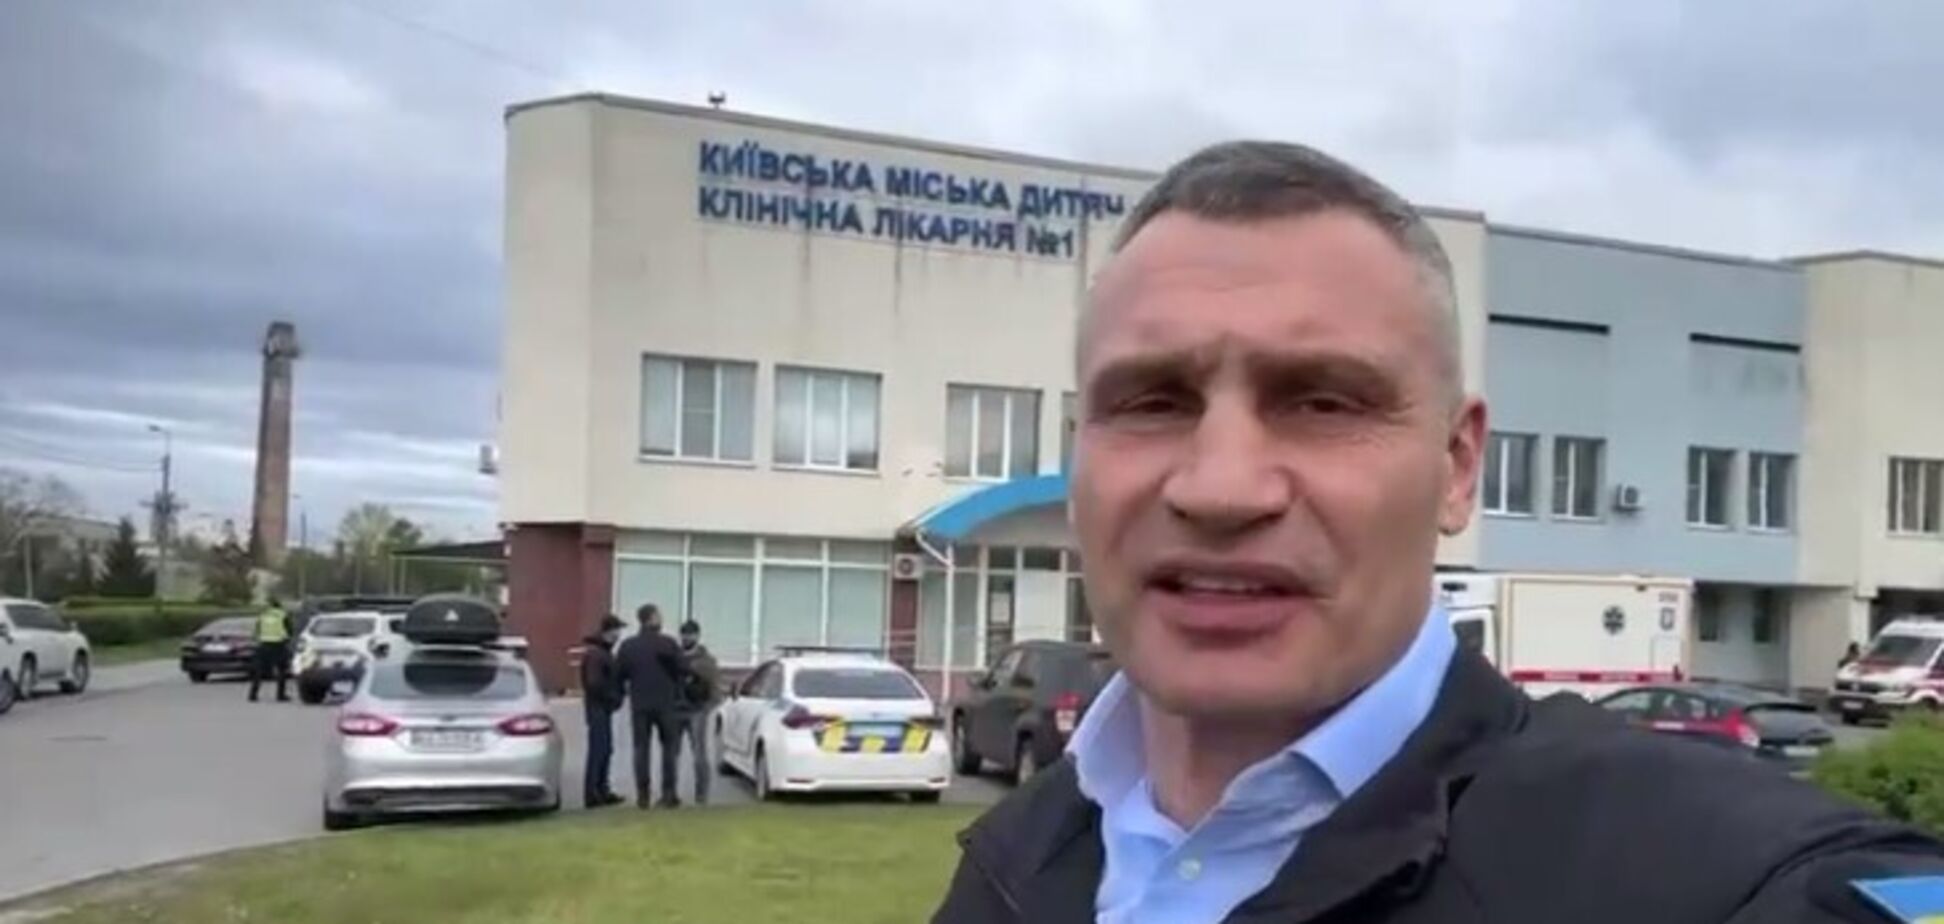 'Усіх пацієнтів і медперсонал вивезли': Кличко показав, як проходила евакуація двох лікарень у Києві. Відео